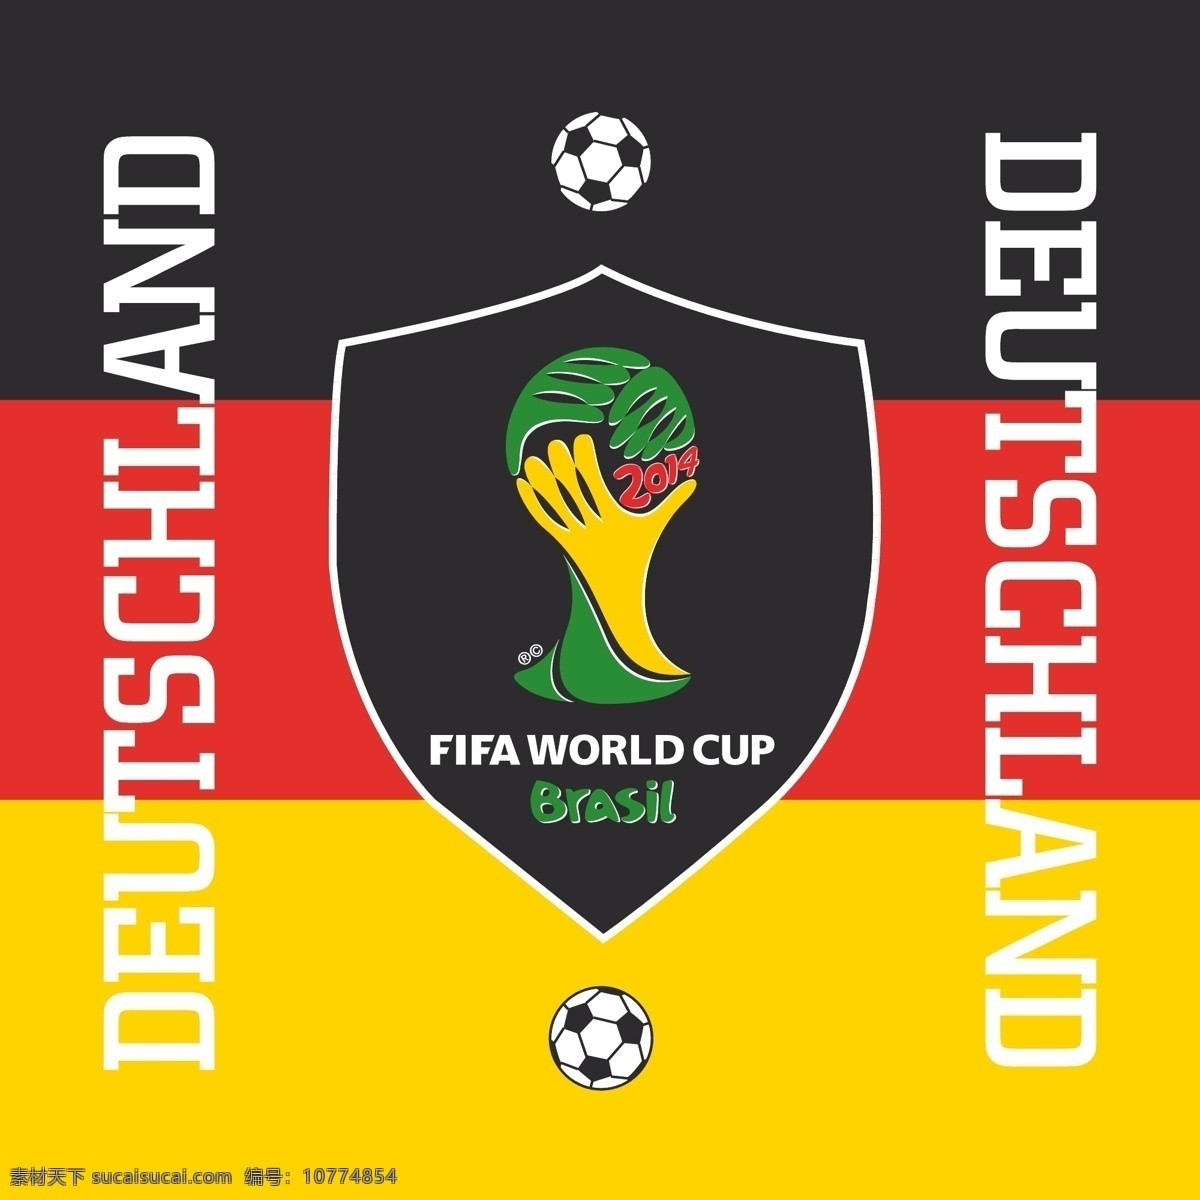 巴西 世界杯 德国队 2014 巴西世界杯 大力神杯 德国 盾牌 模板 设计稿 素材元素 足球 奖杯插图 体育素材 源文件 矢量图